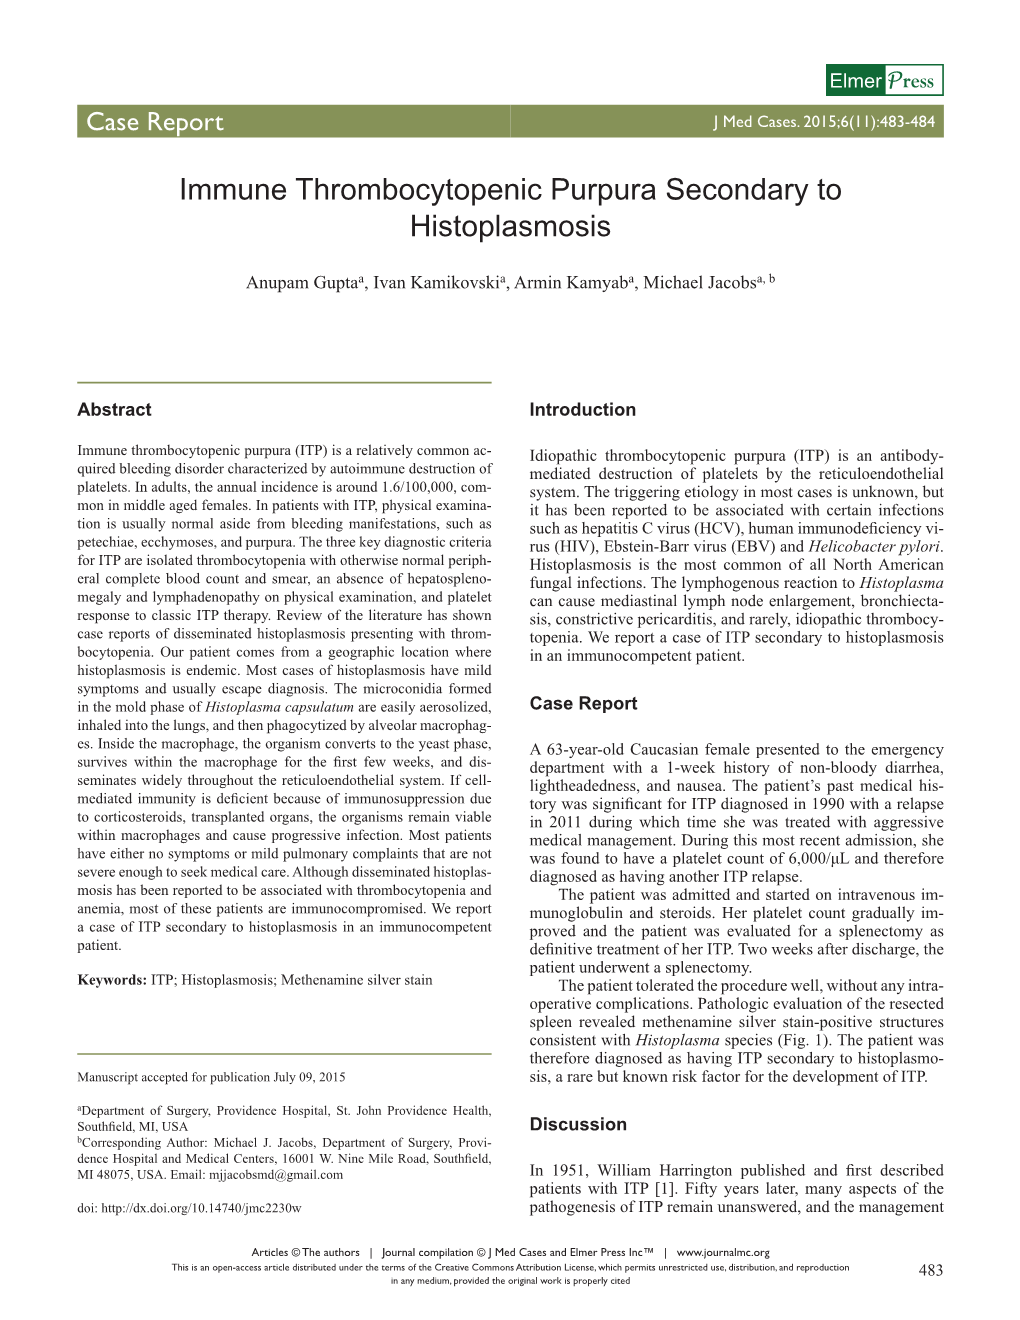 Immune Thrombocytopenic Purpura Secondary to Histoplasmosis